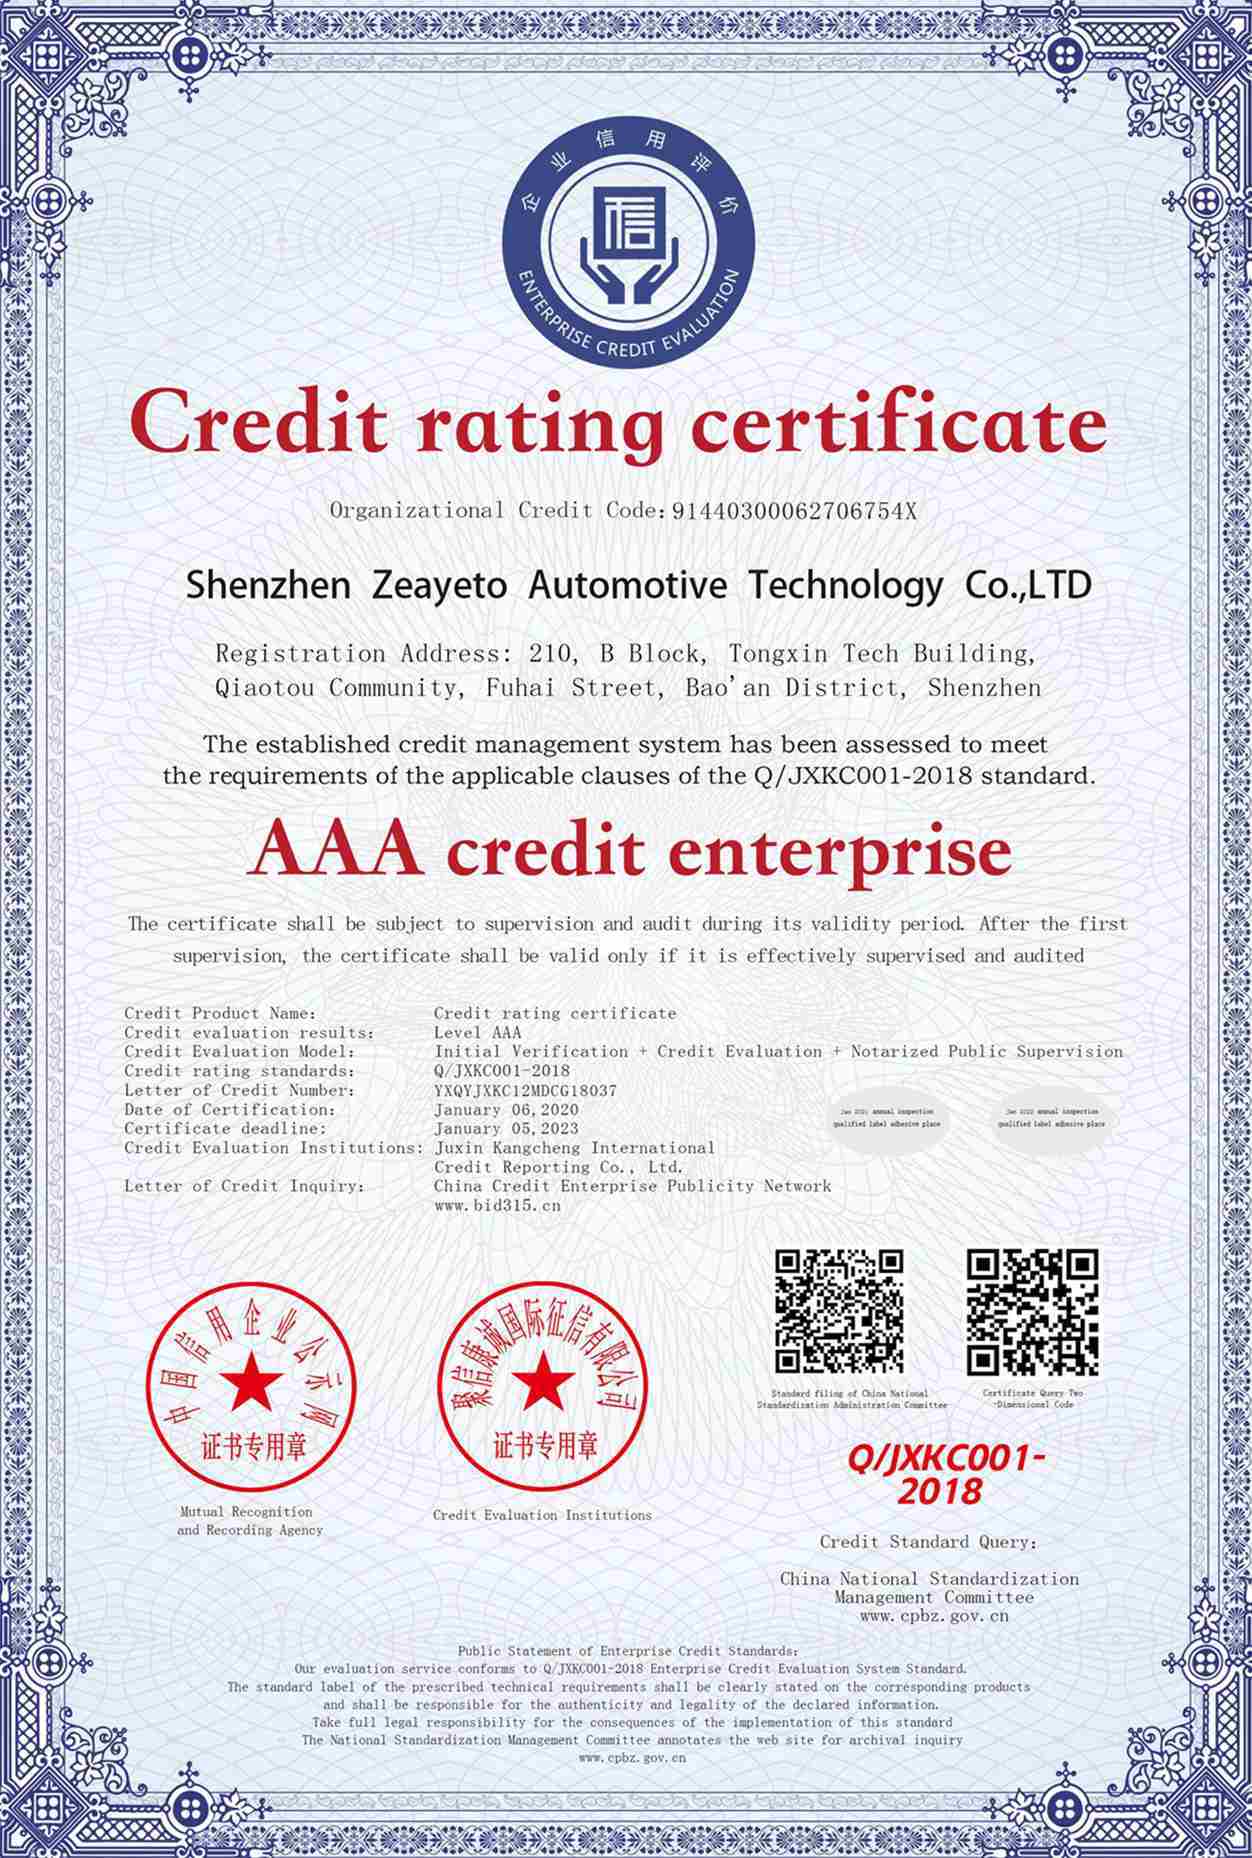 AAA Кредитное Предприятие